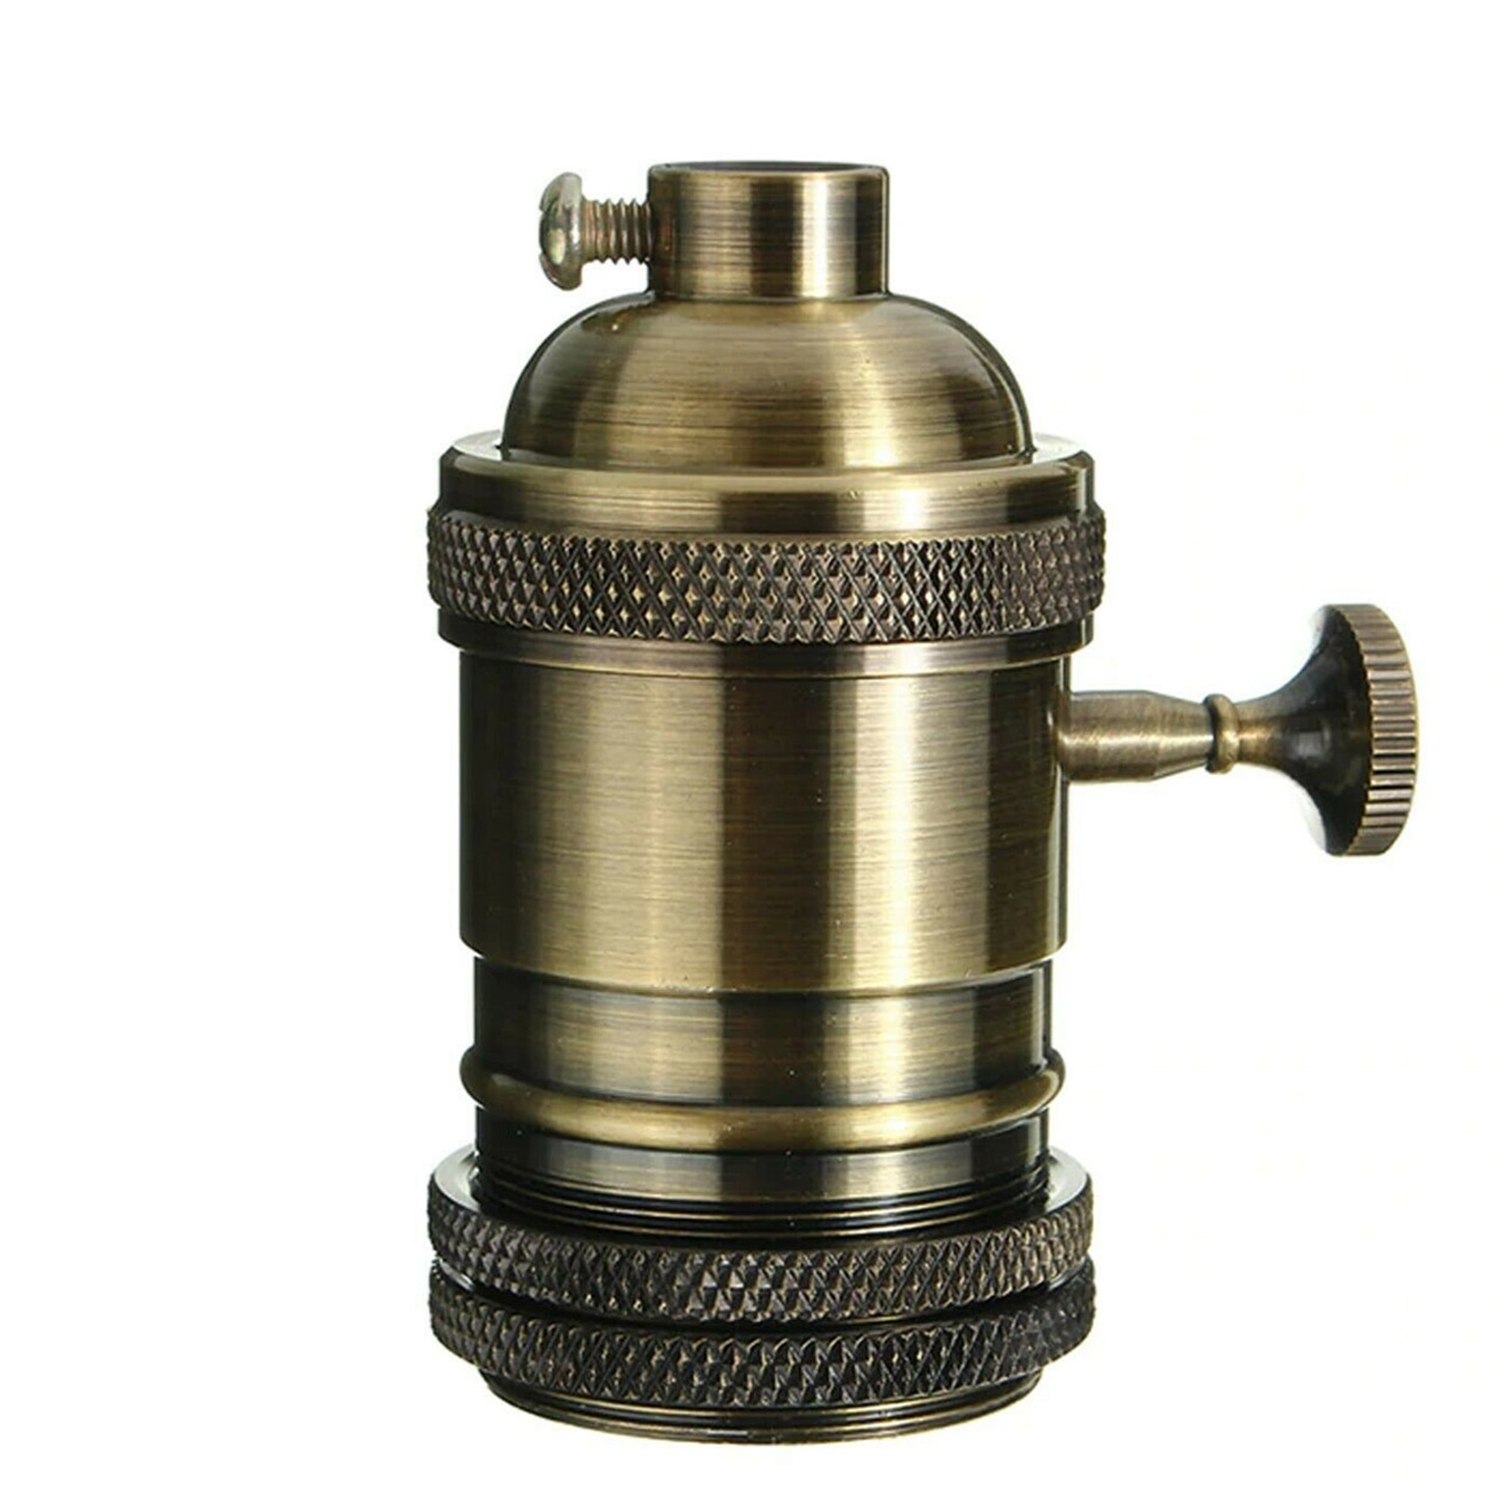 Green Brass E27 Industrial Lamp Light Bulb Holder Antique Retro Edison Screw Fitting~3799